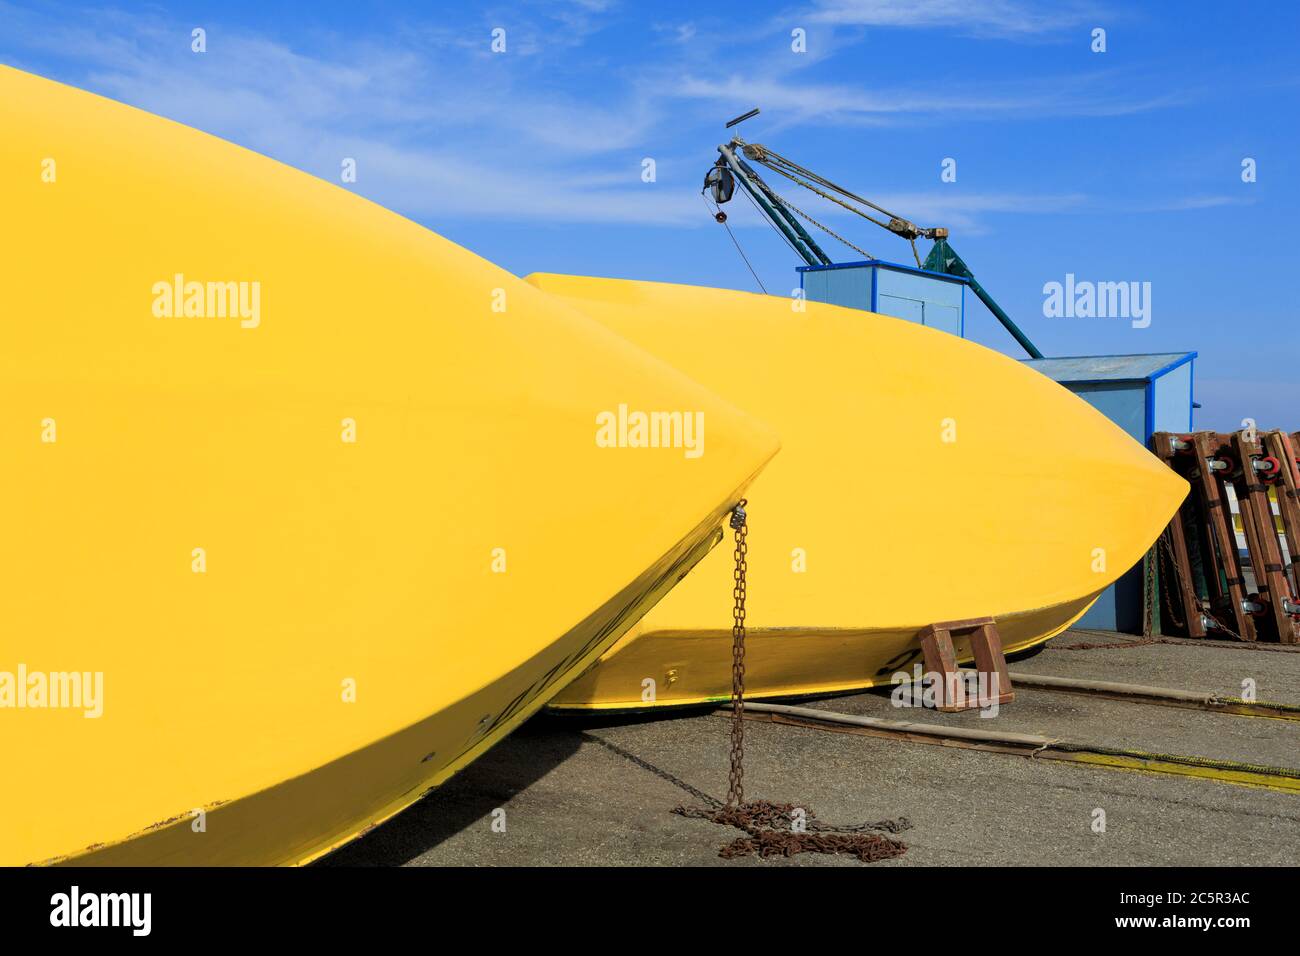 Bootsverleih auf der Municipal Wharf, Santa Cruz, Kalifornien, USA Stockfoto